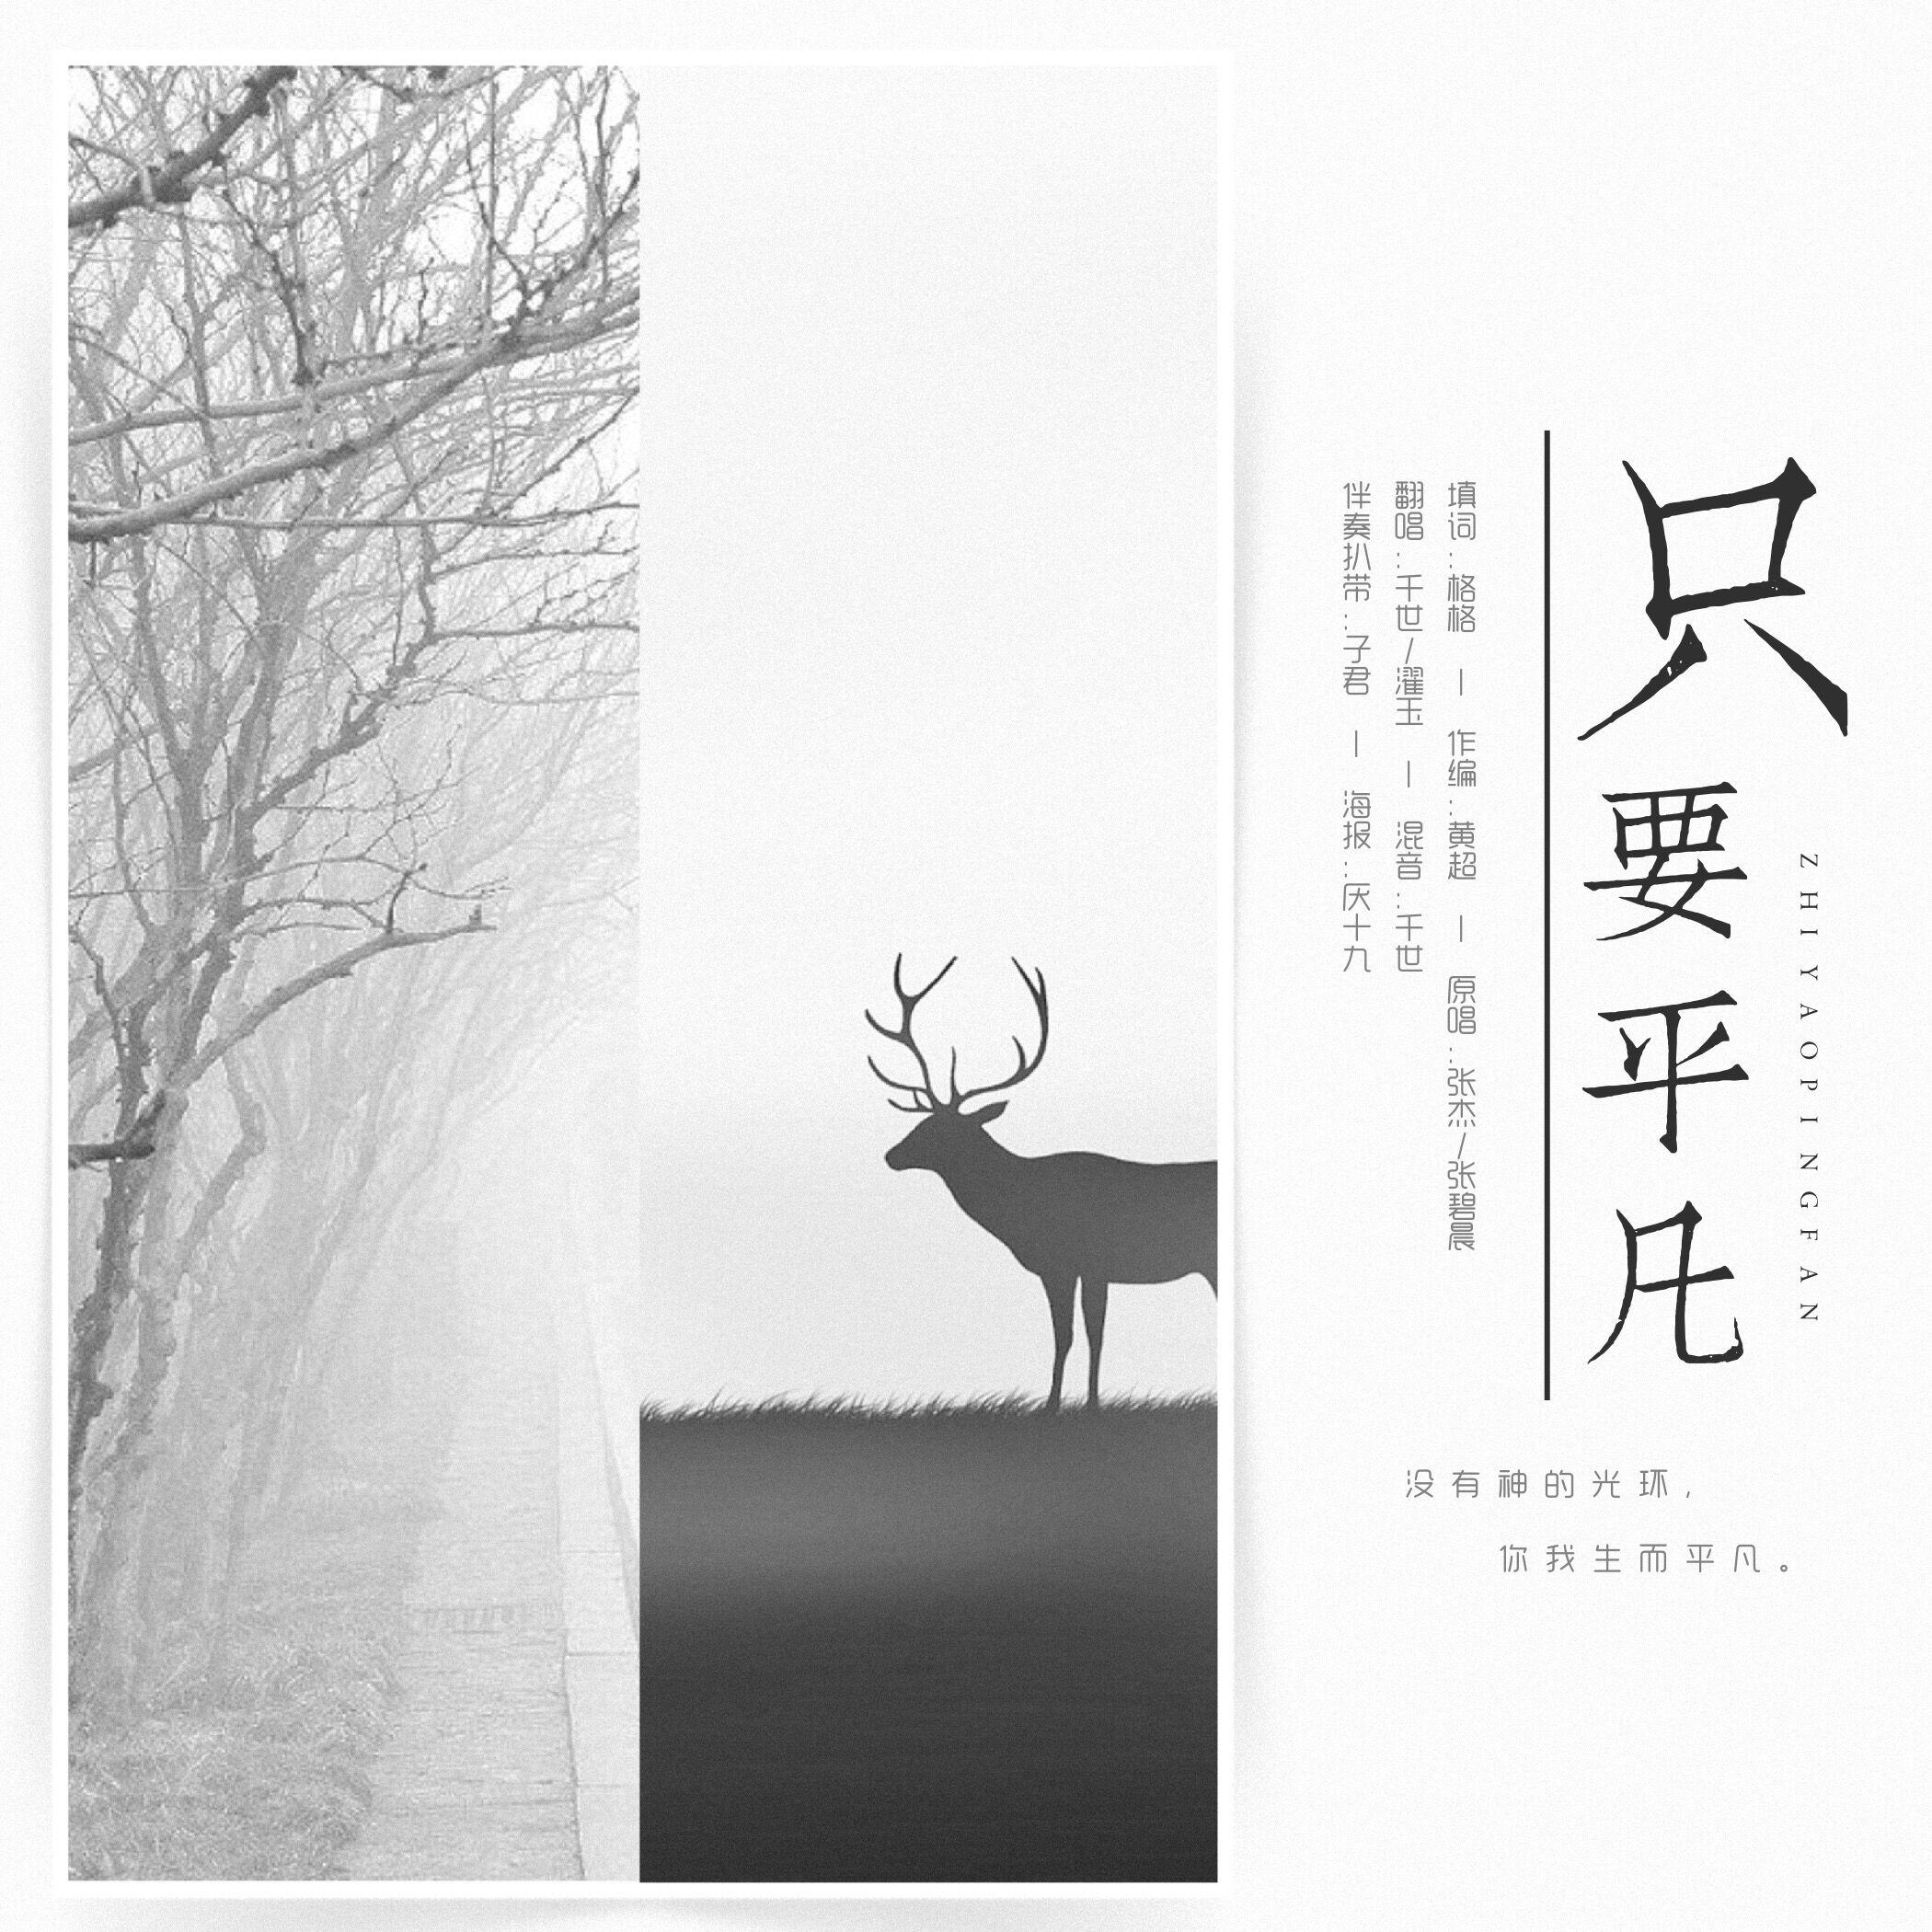 只要平凡(cover:张杰)